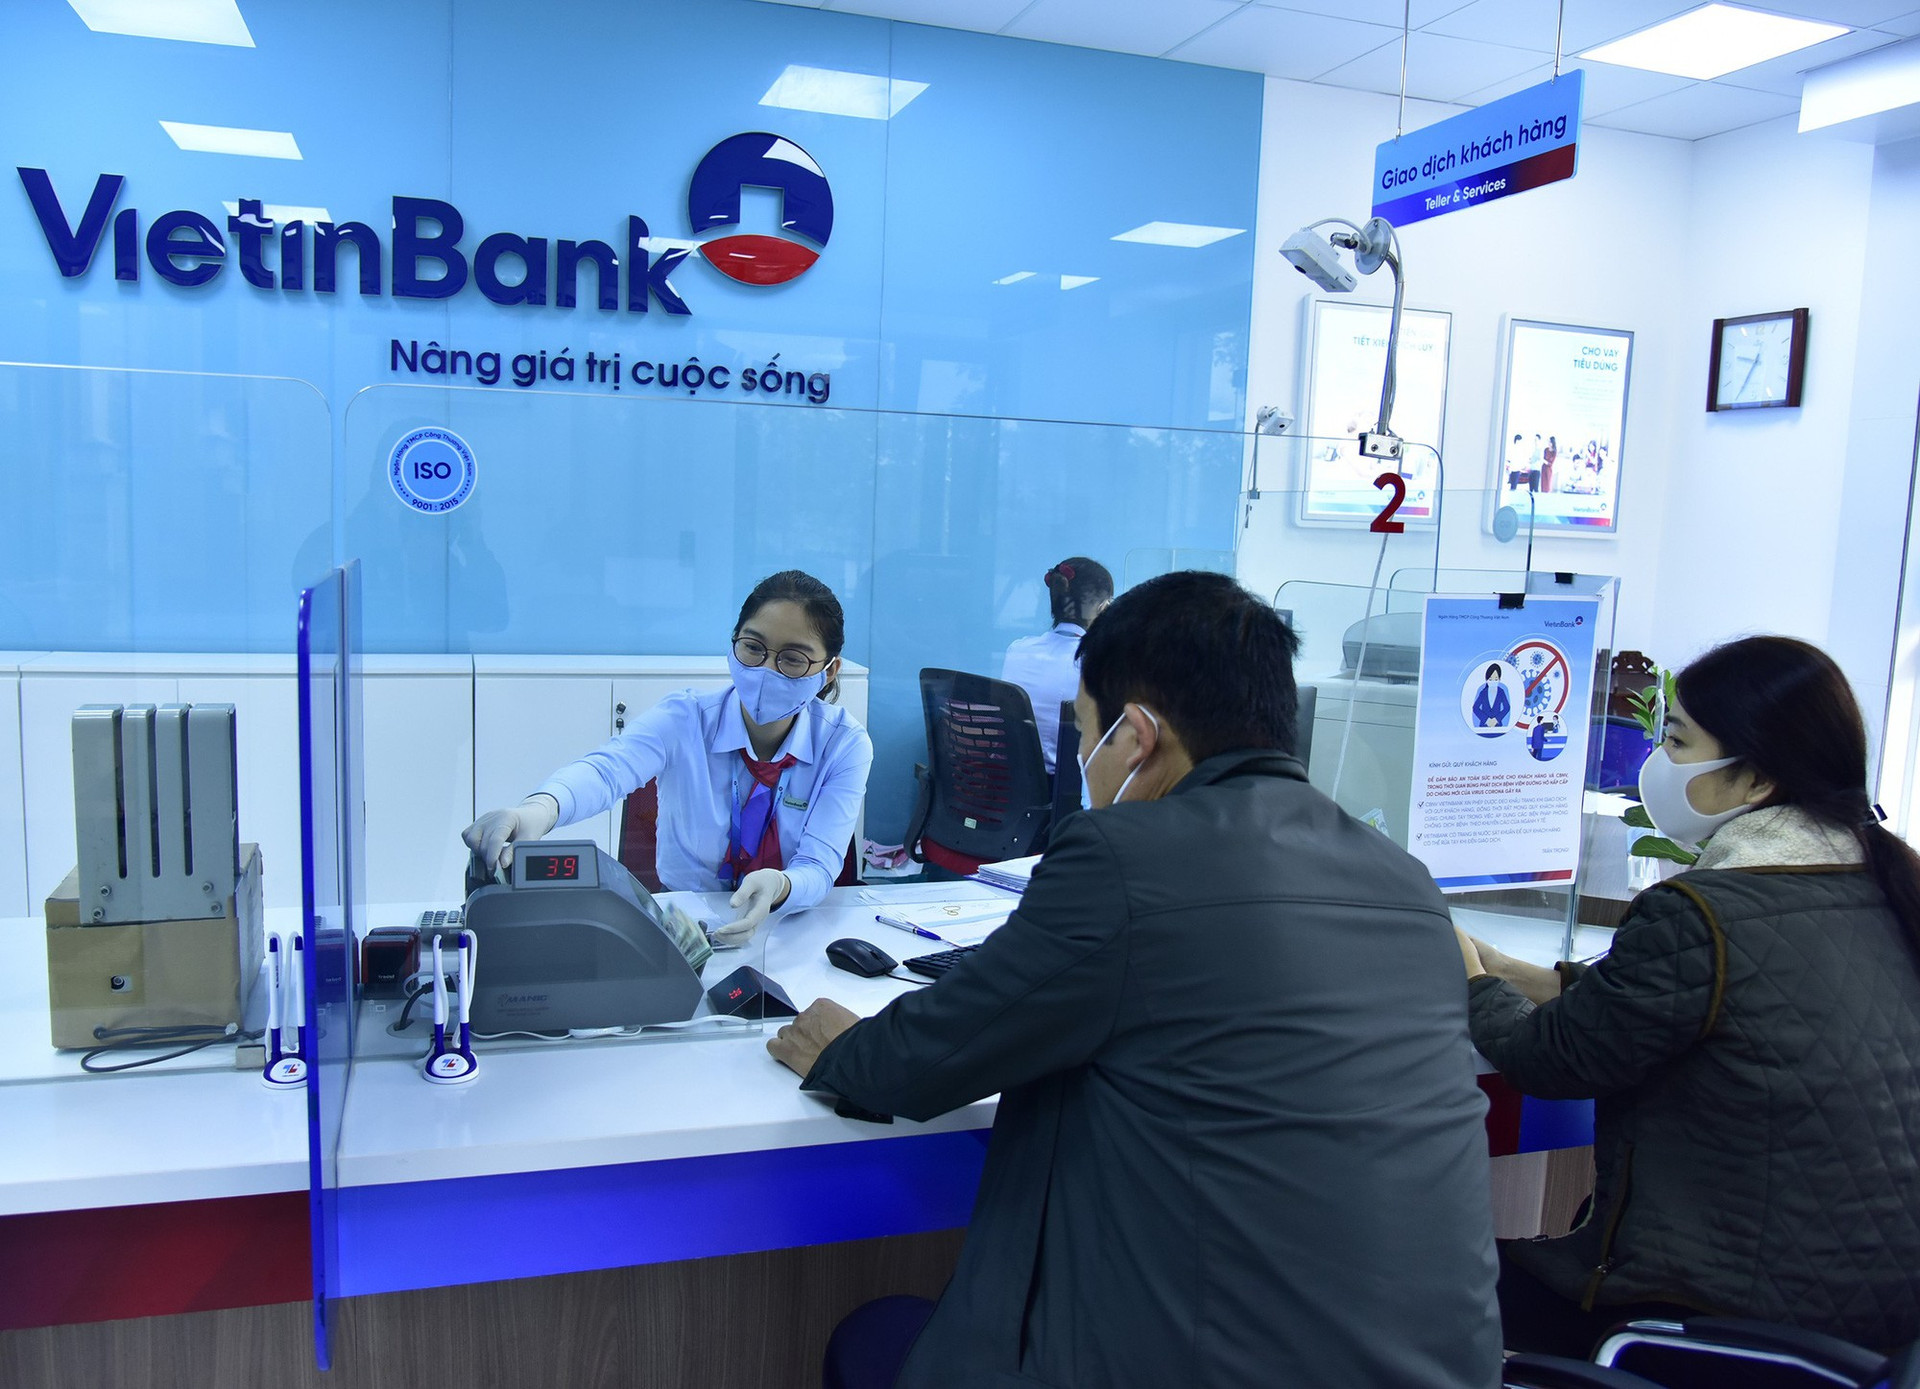 Vượt qua Vingroup, Vietinbank trở thành doanh nghiệp có vốn hóa lớn thứ 5 trên sàn HOSE - 2